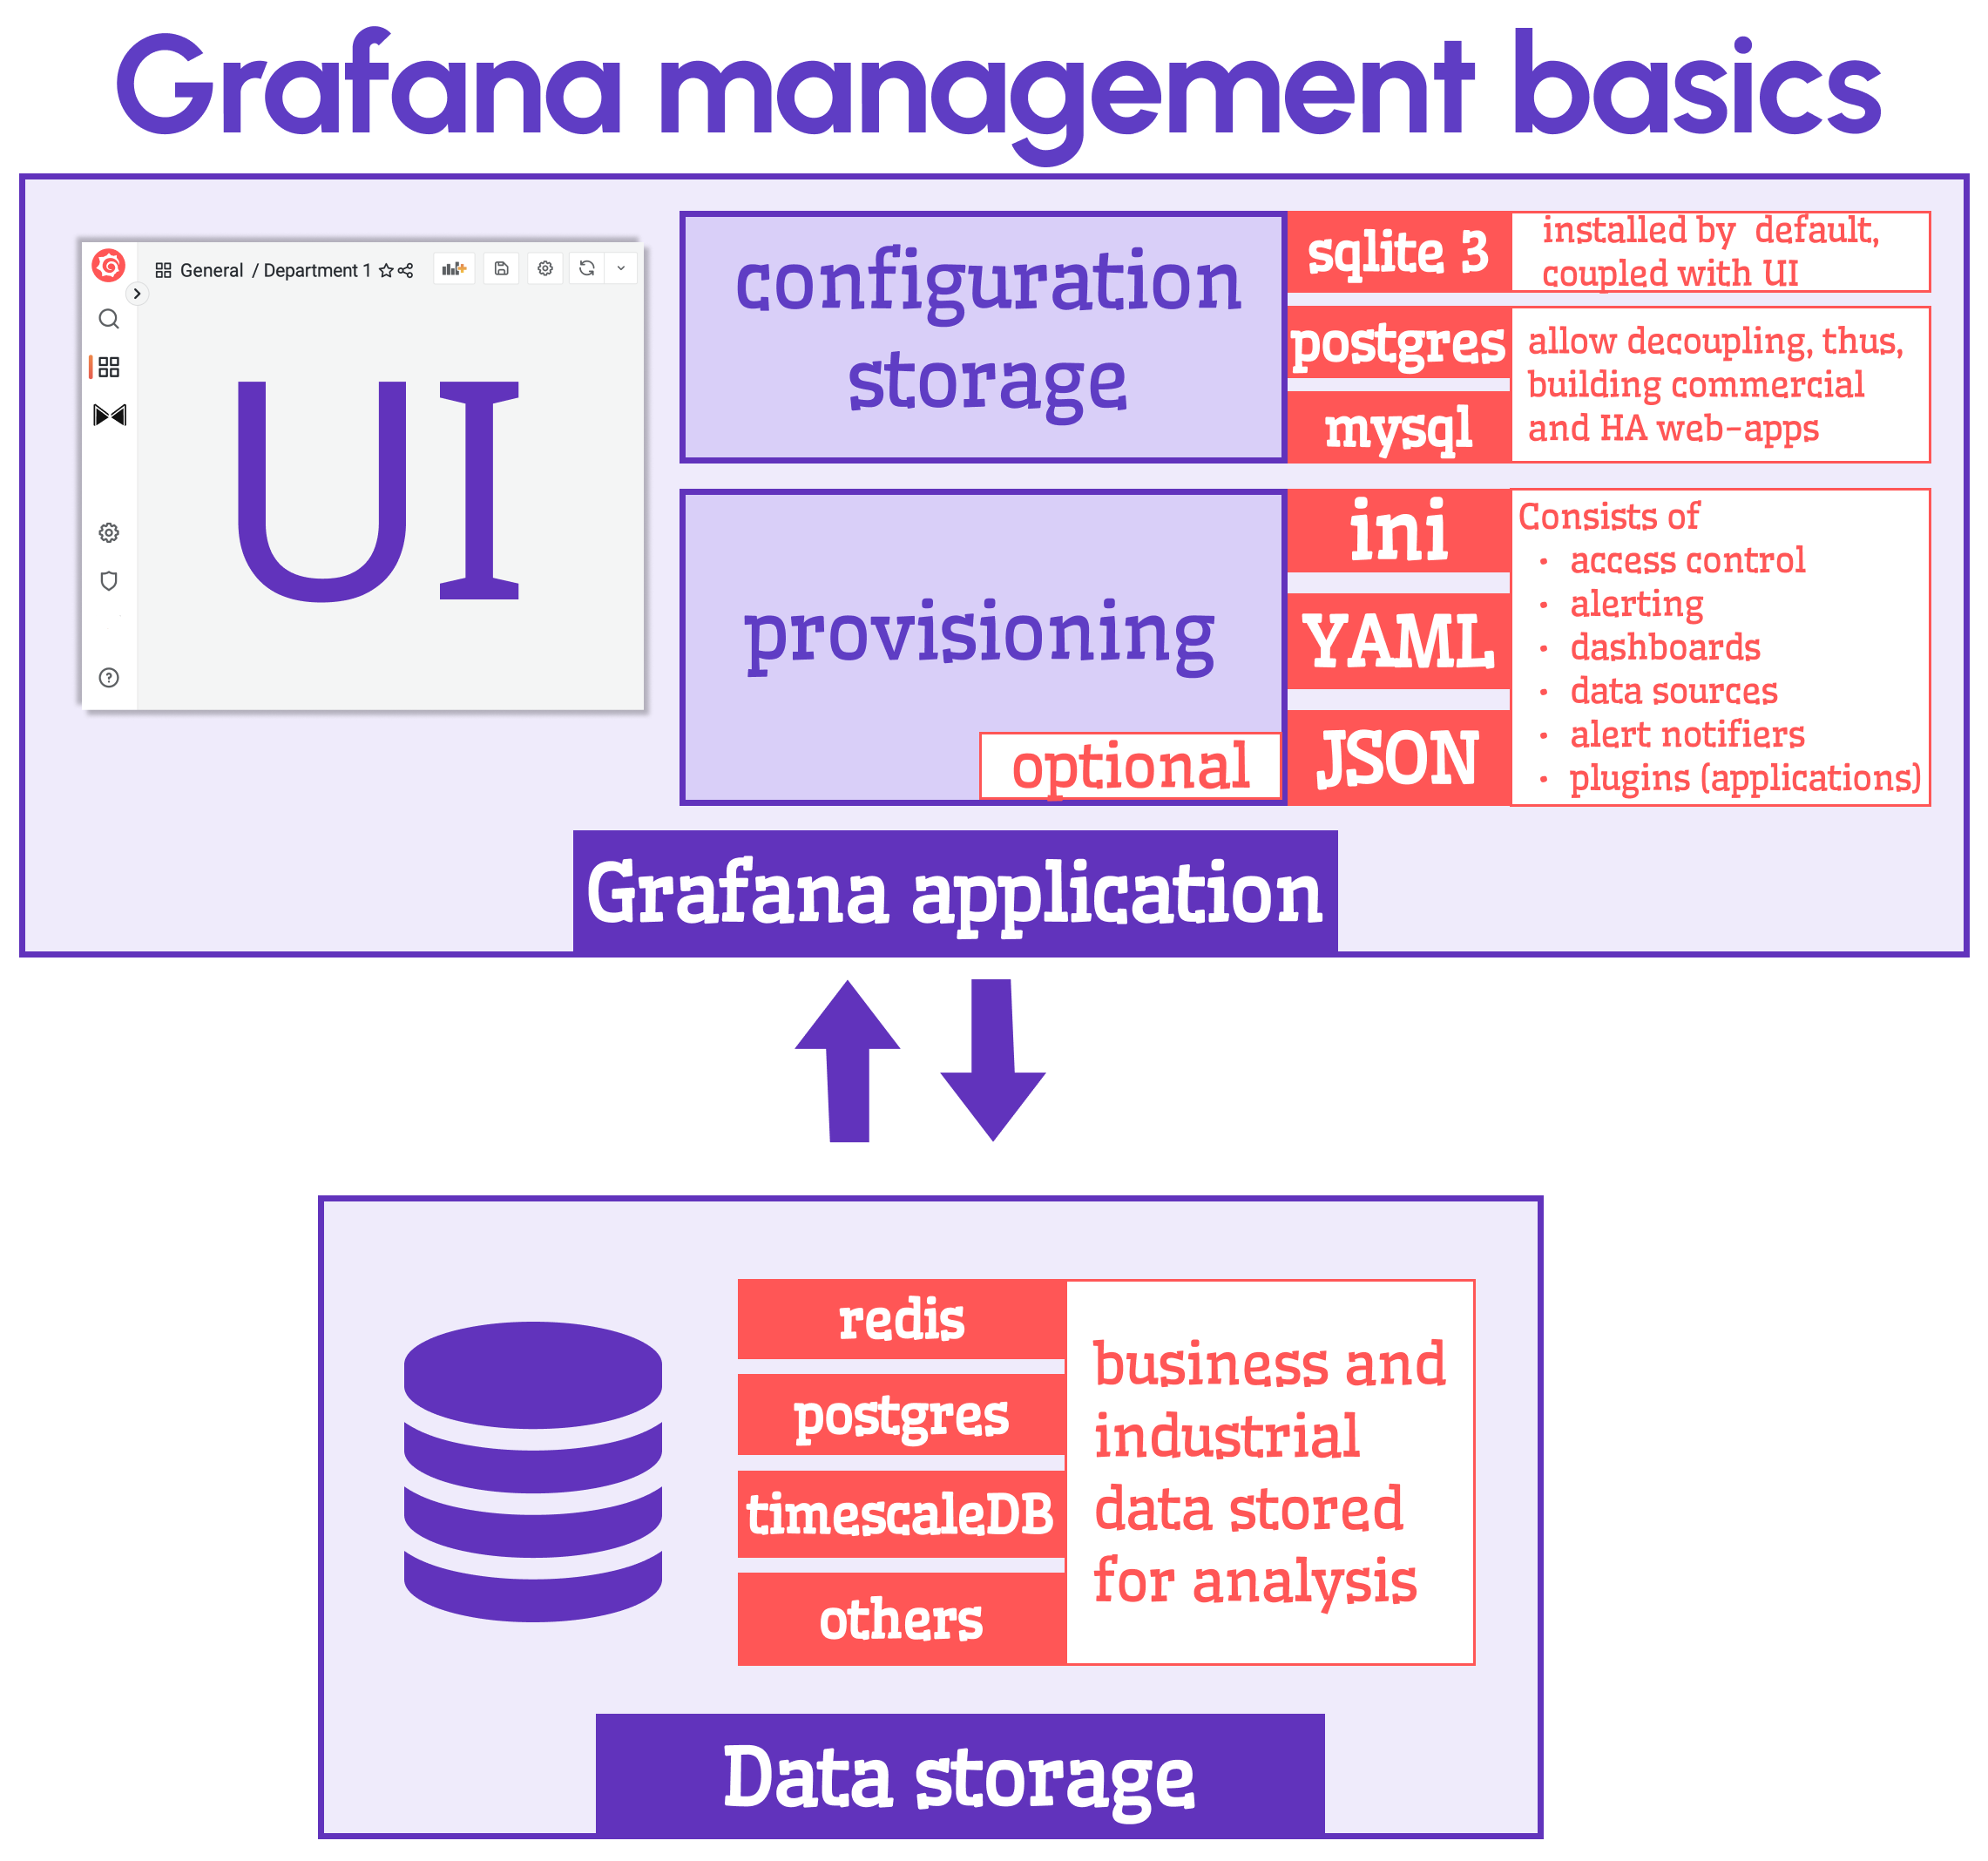 Grafana management basics.